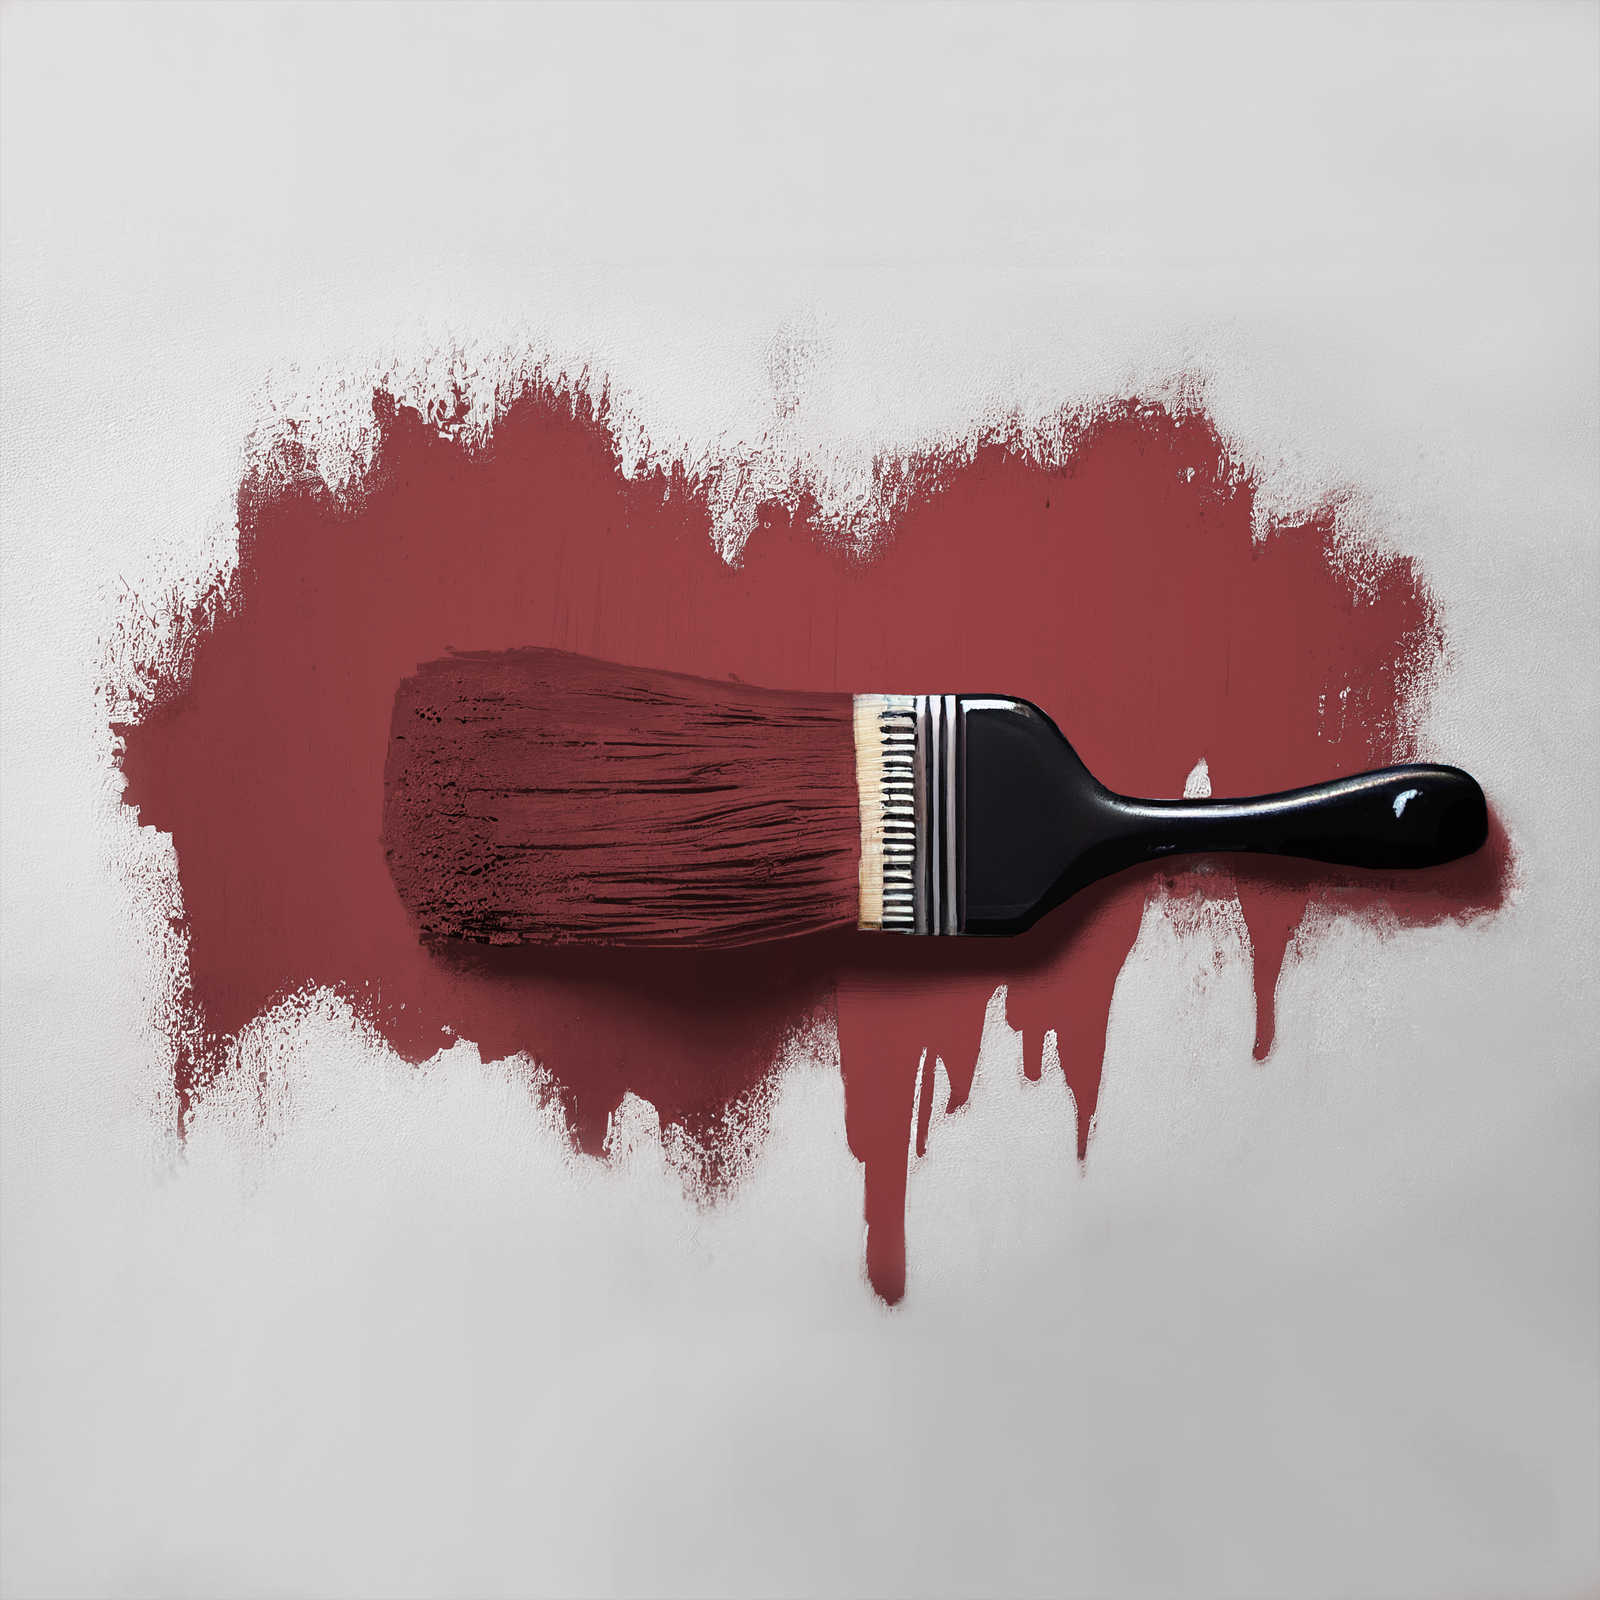             Pintura mural TCK7006 »Perky Pomegranate« en rojo oscuro pasión – 5,0 litro
        